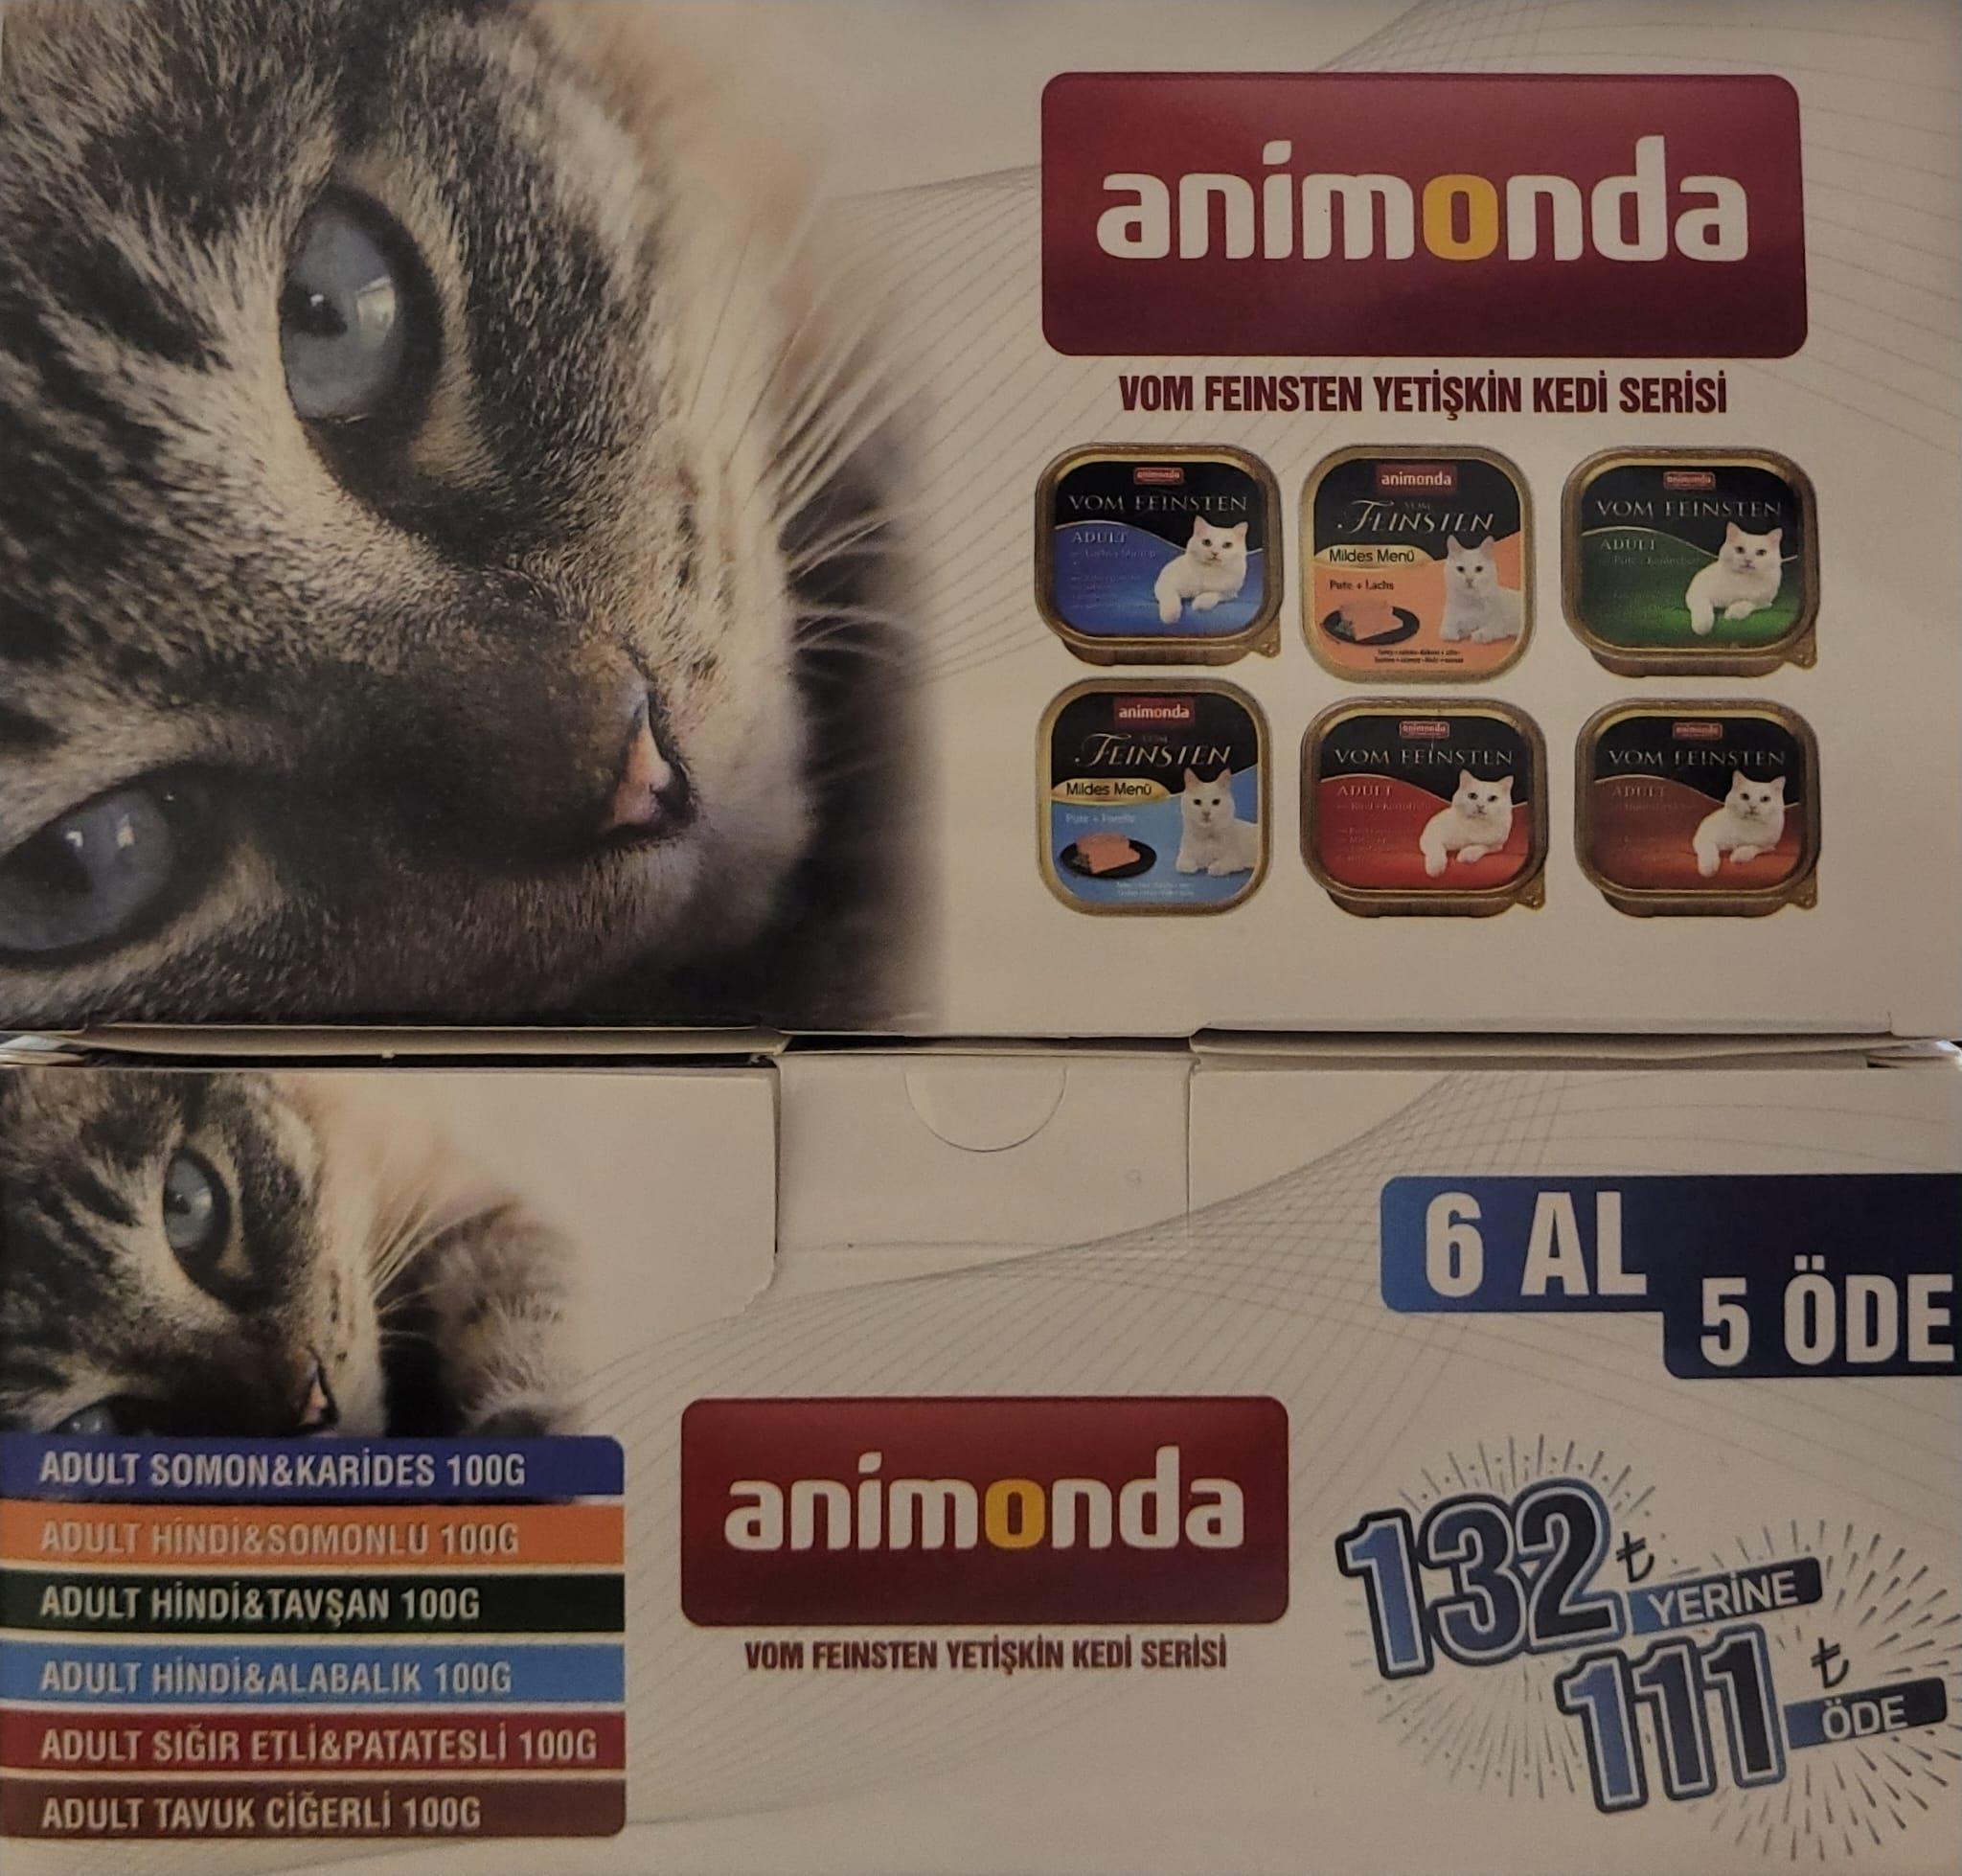 Animonda Yetişkin Kedi Konservesi 100 gr  6 Al 5 Öde